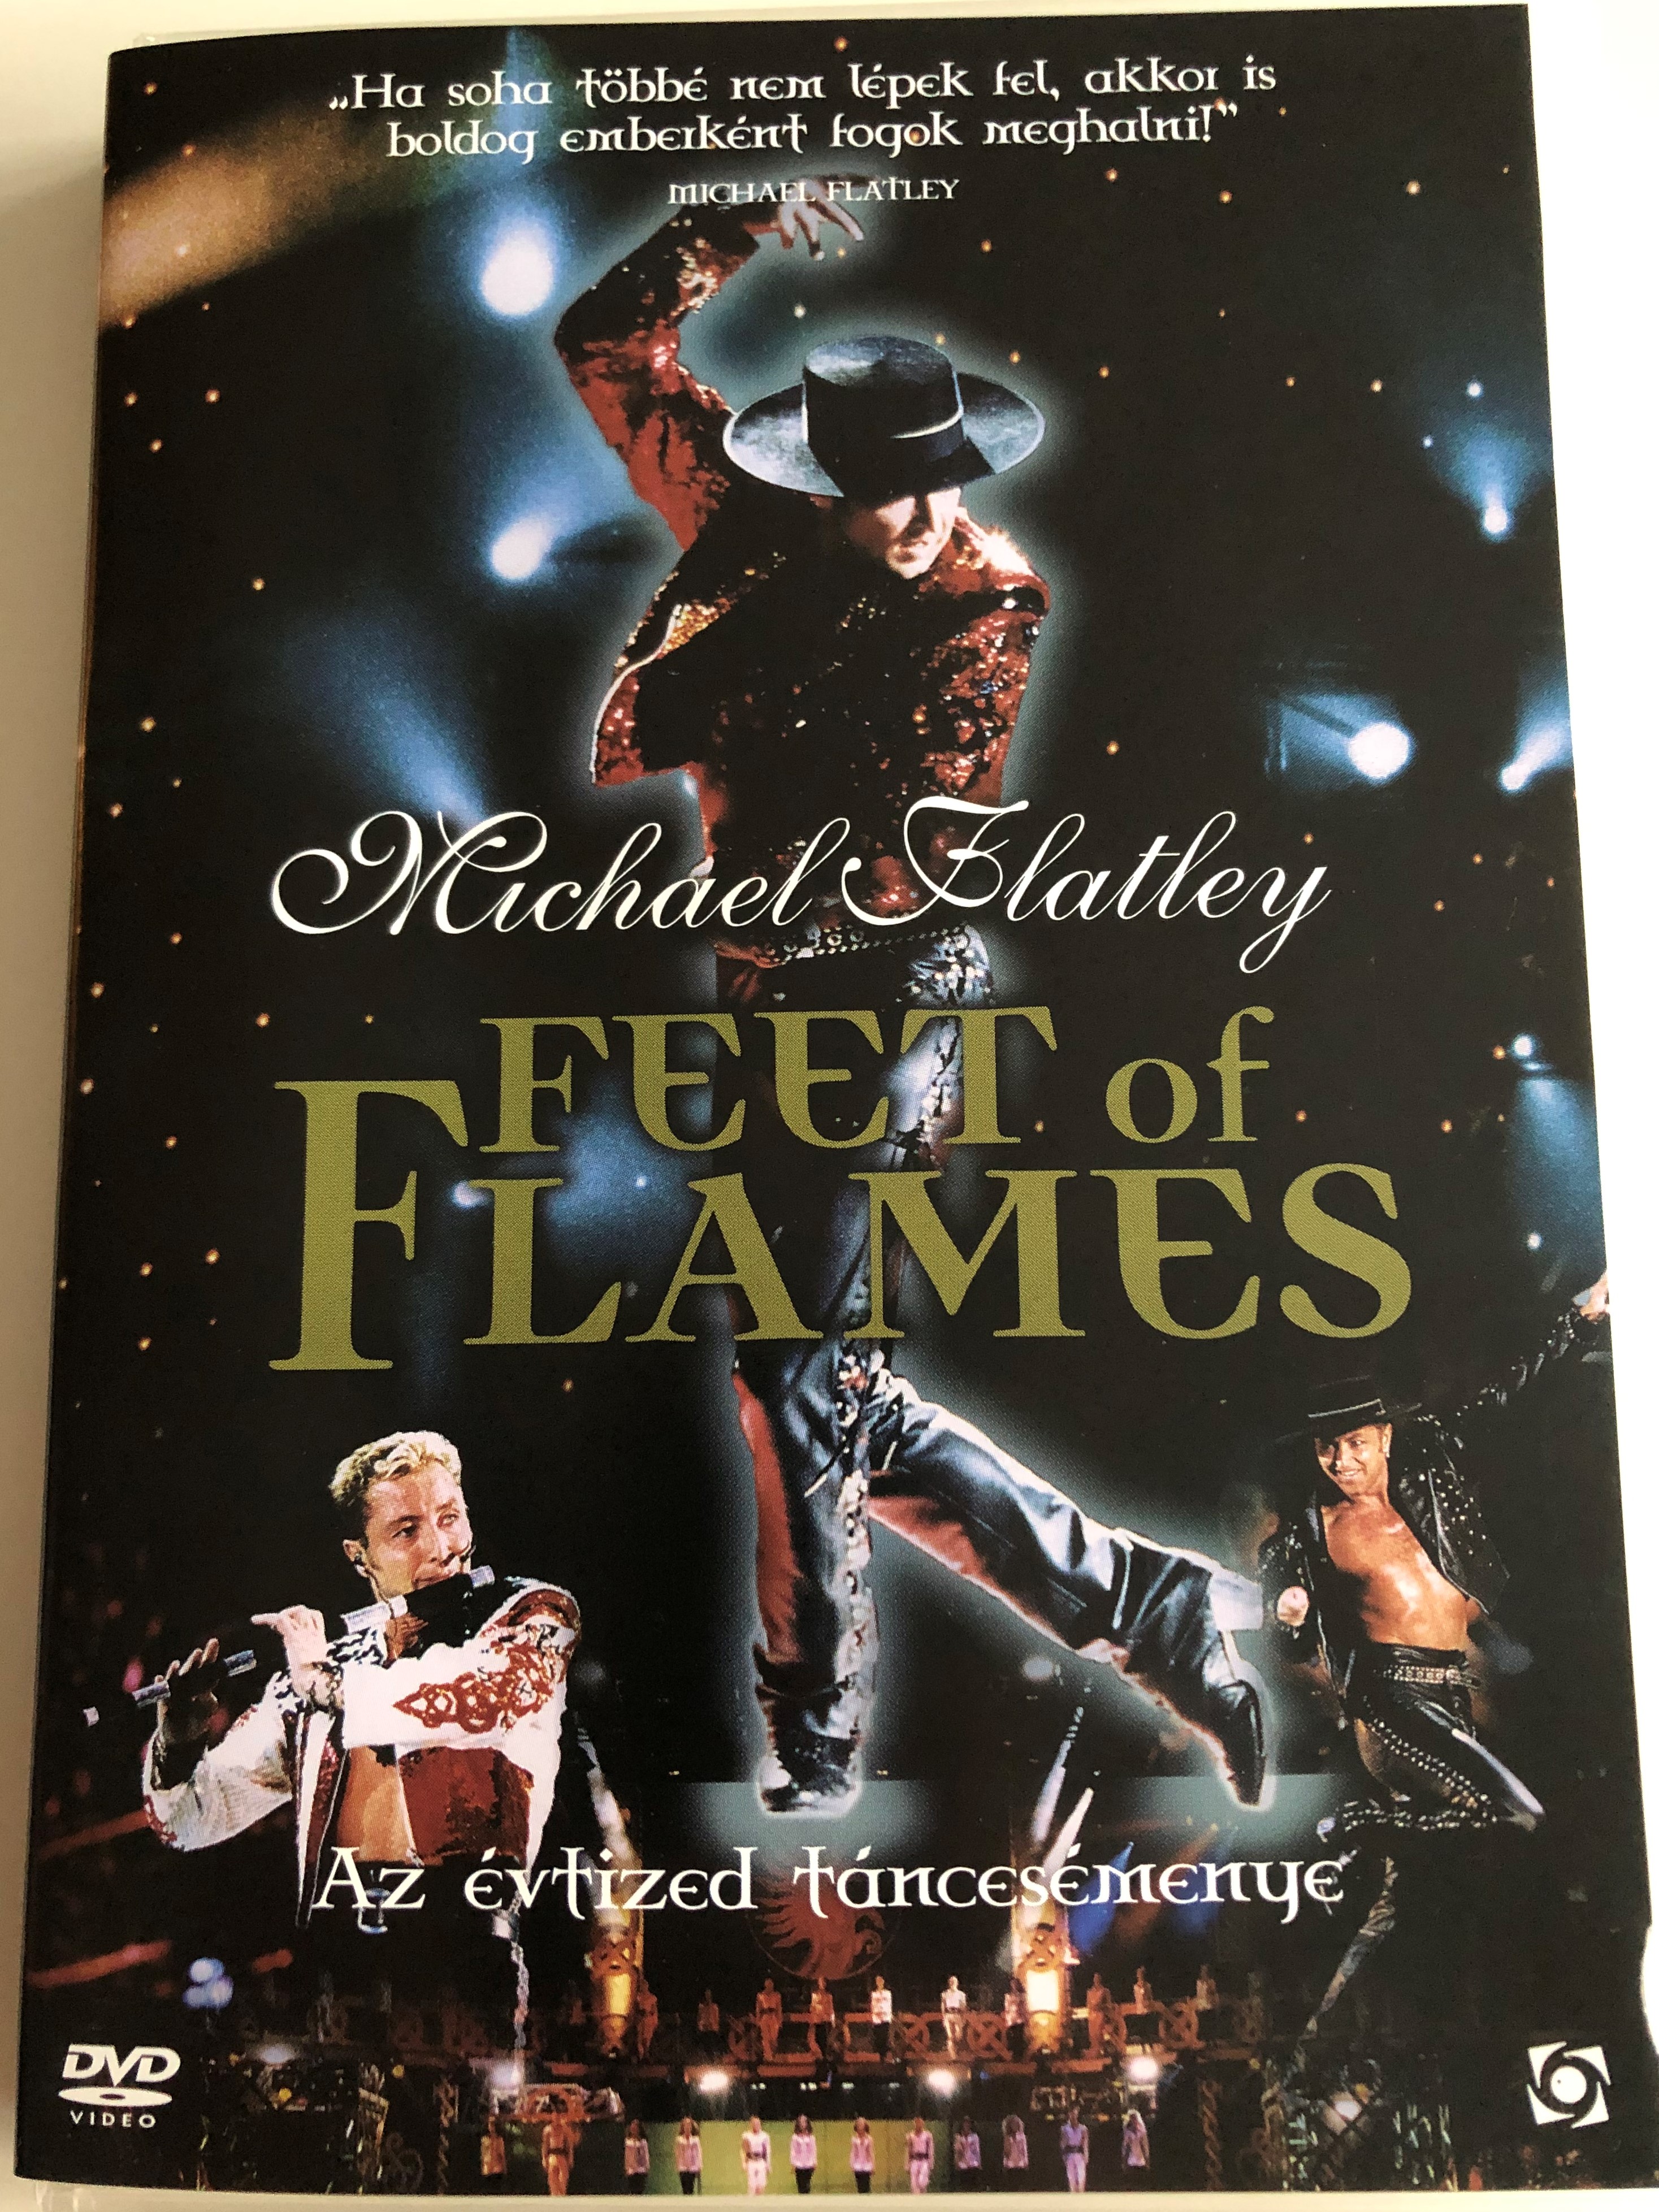 michael-flatley-feet-of-flames-dvd-1998-az-vtized-t-ncesem-nye-1.jpg